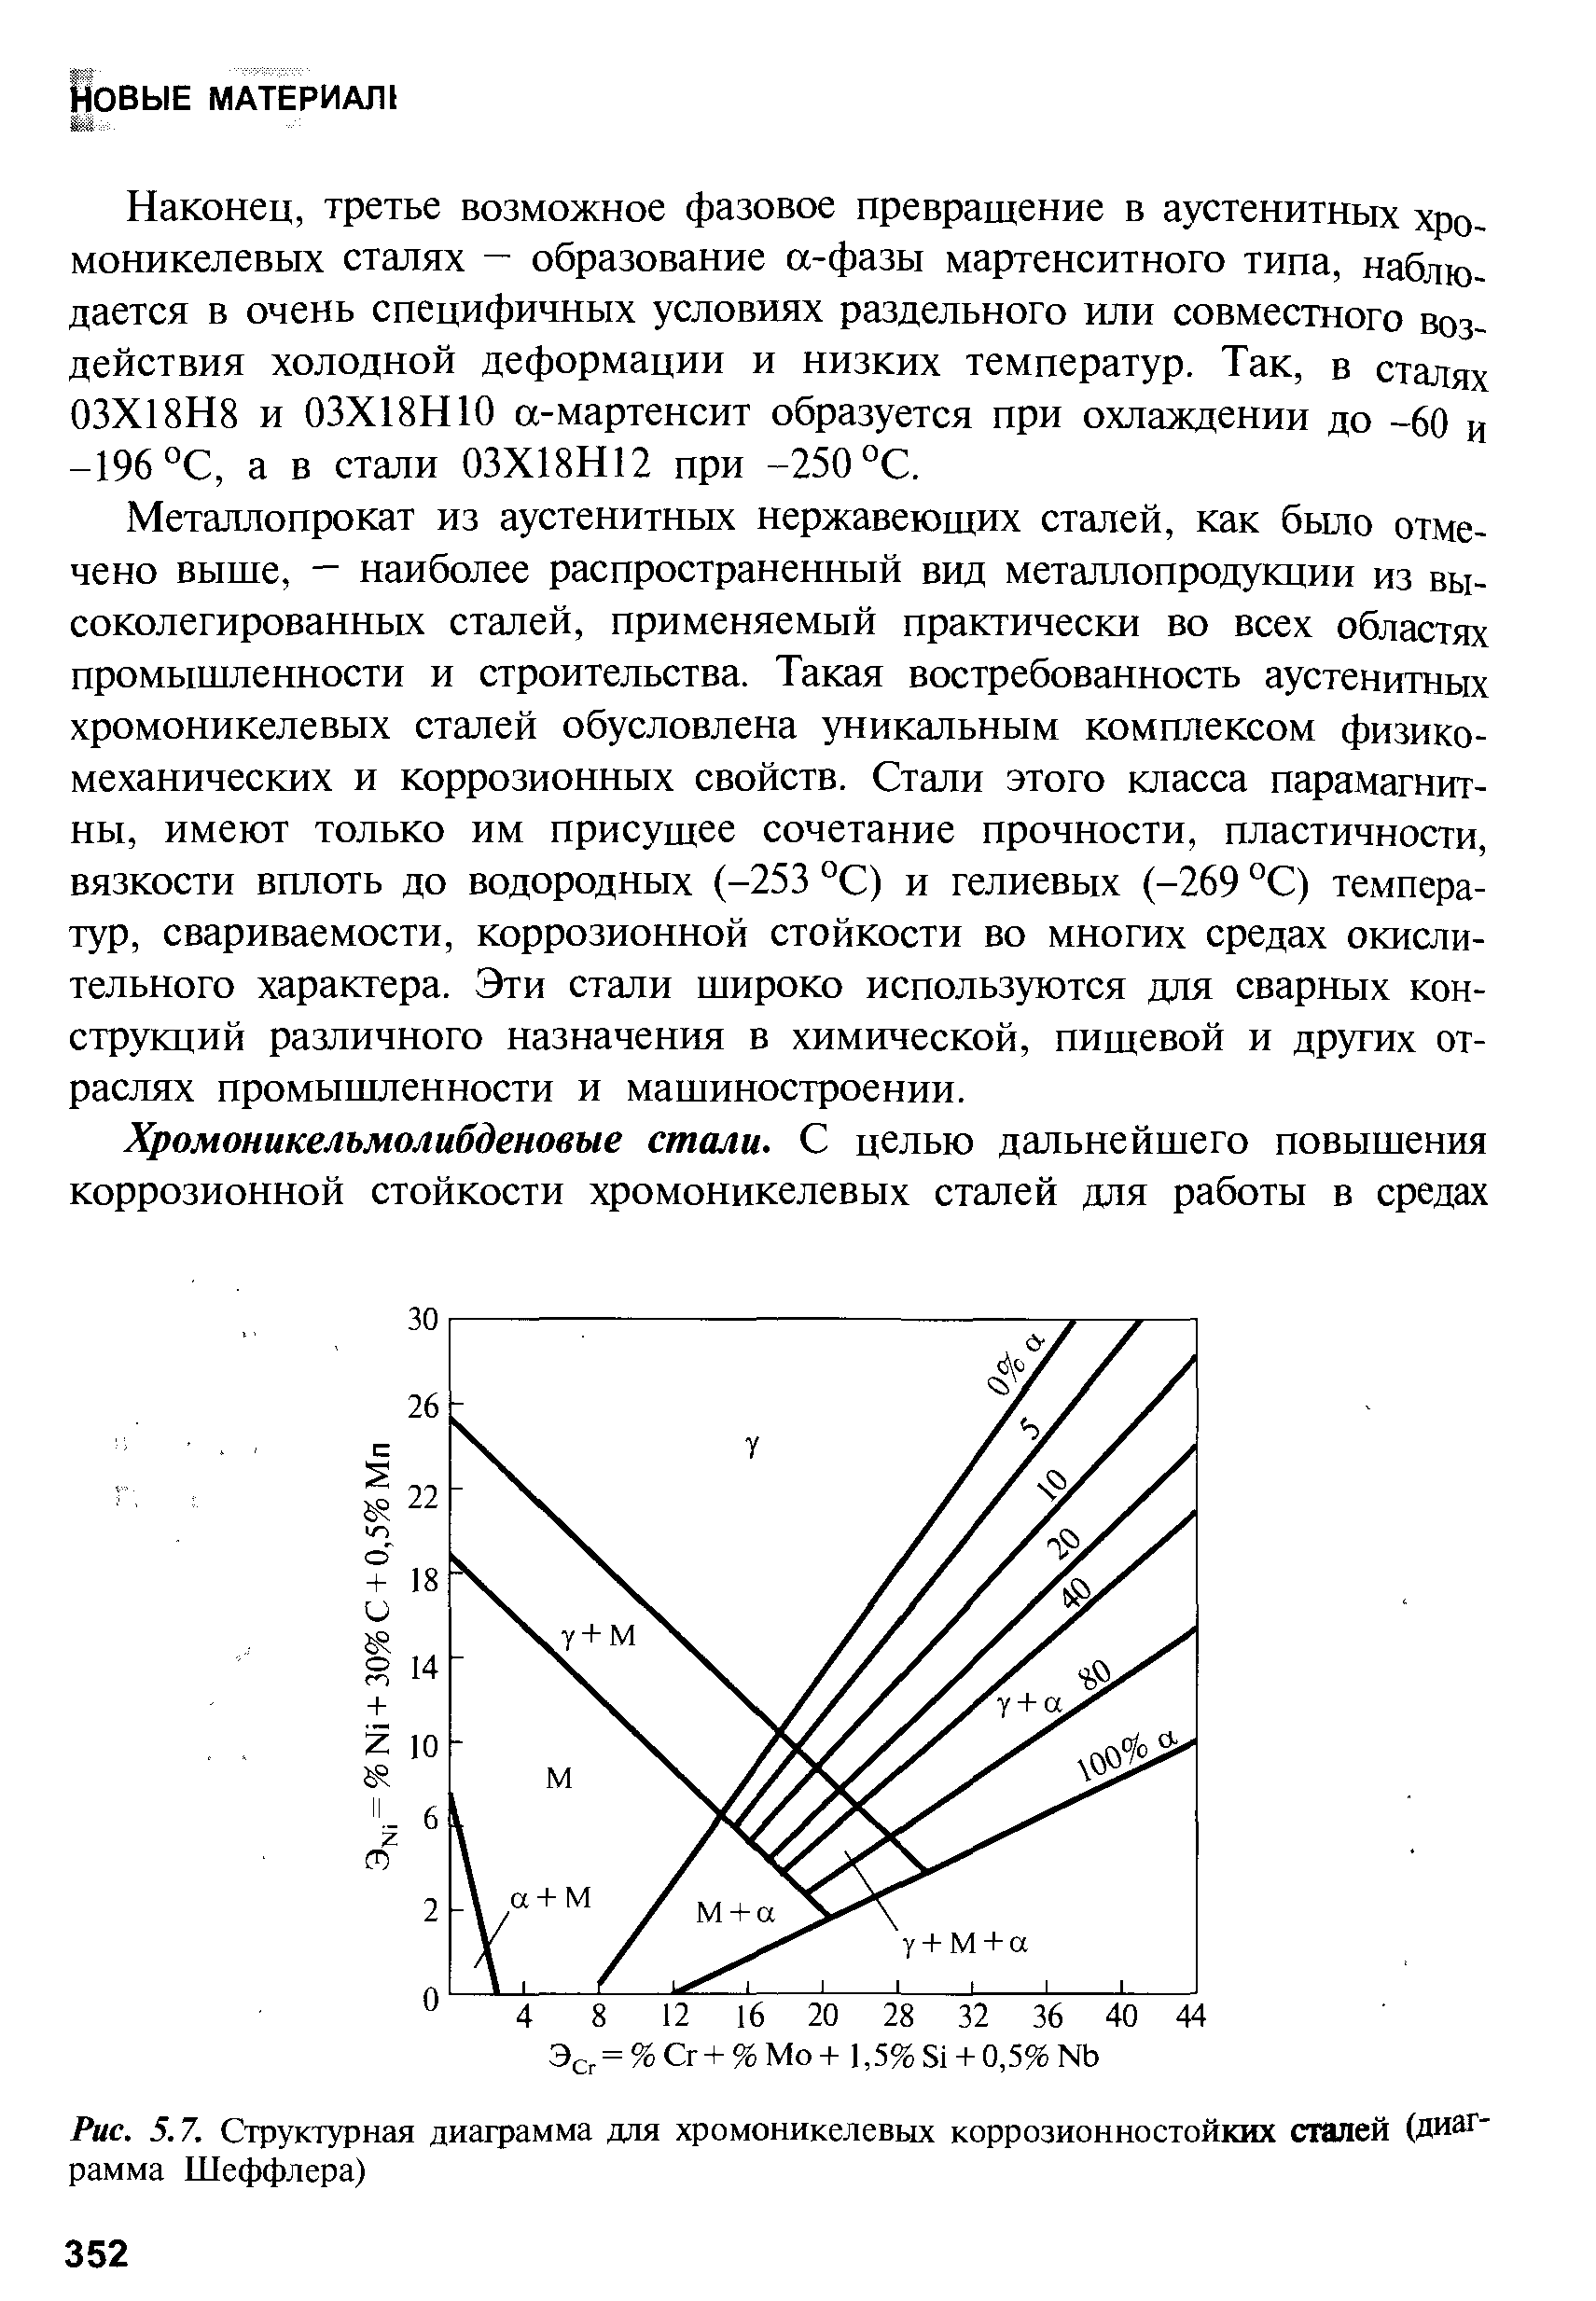 Рис. 5.7. Структурная диаграмма для хромоникелевых коррозионностойких сталей (диаграмма Шеффлера)
